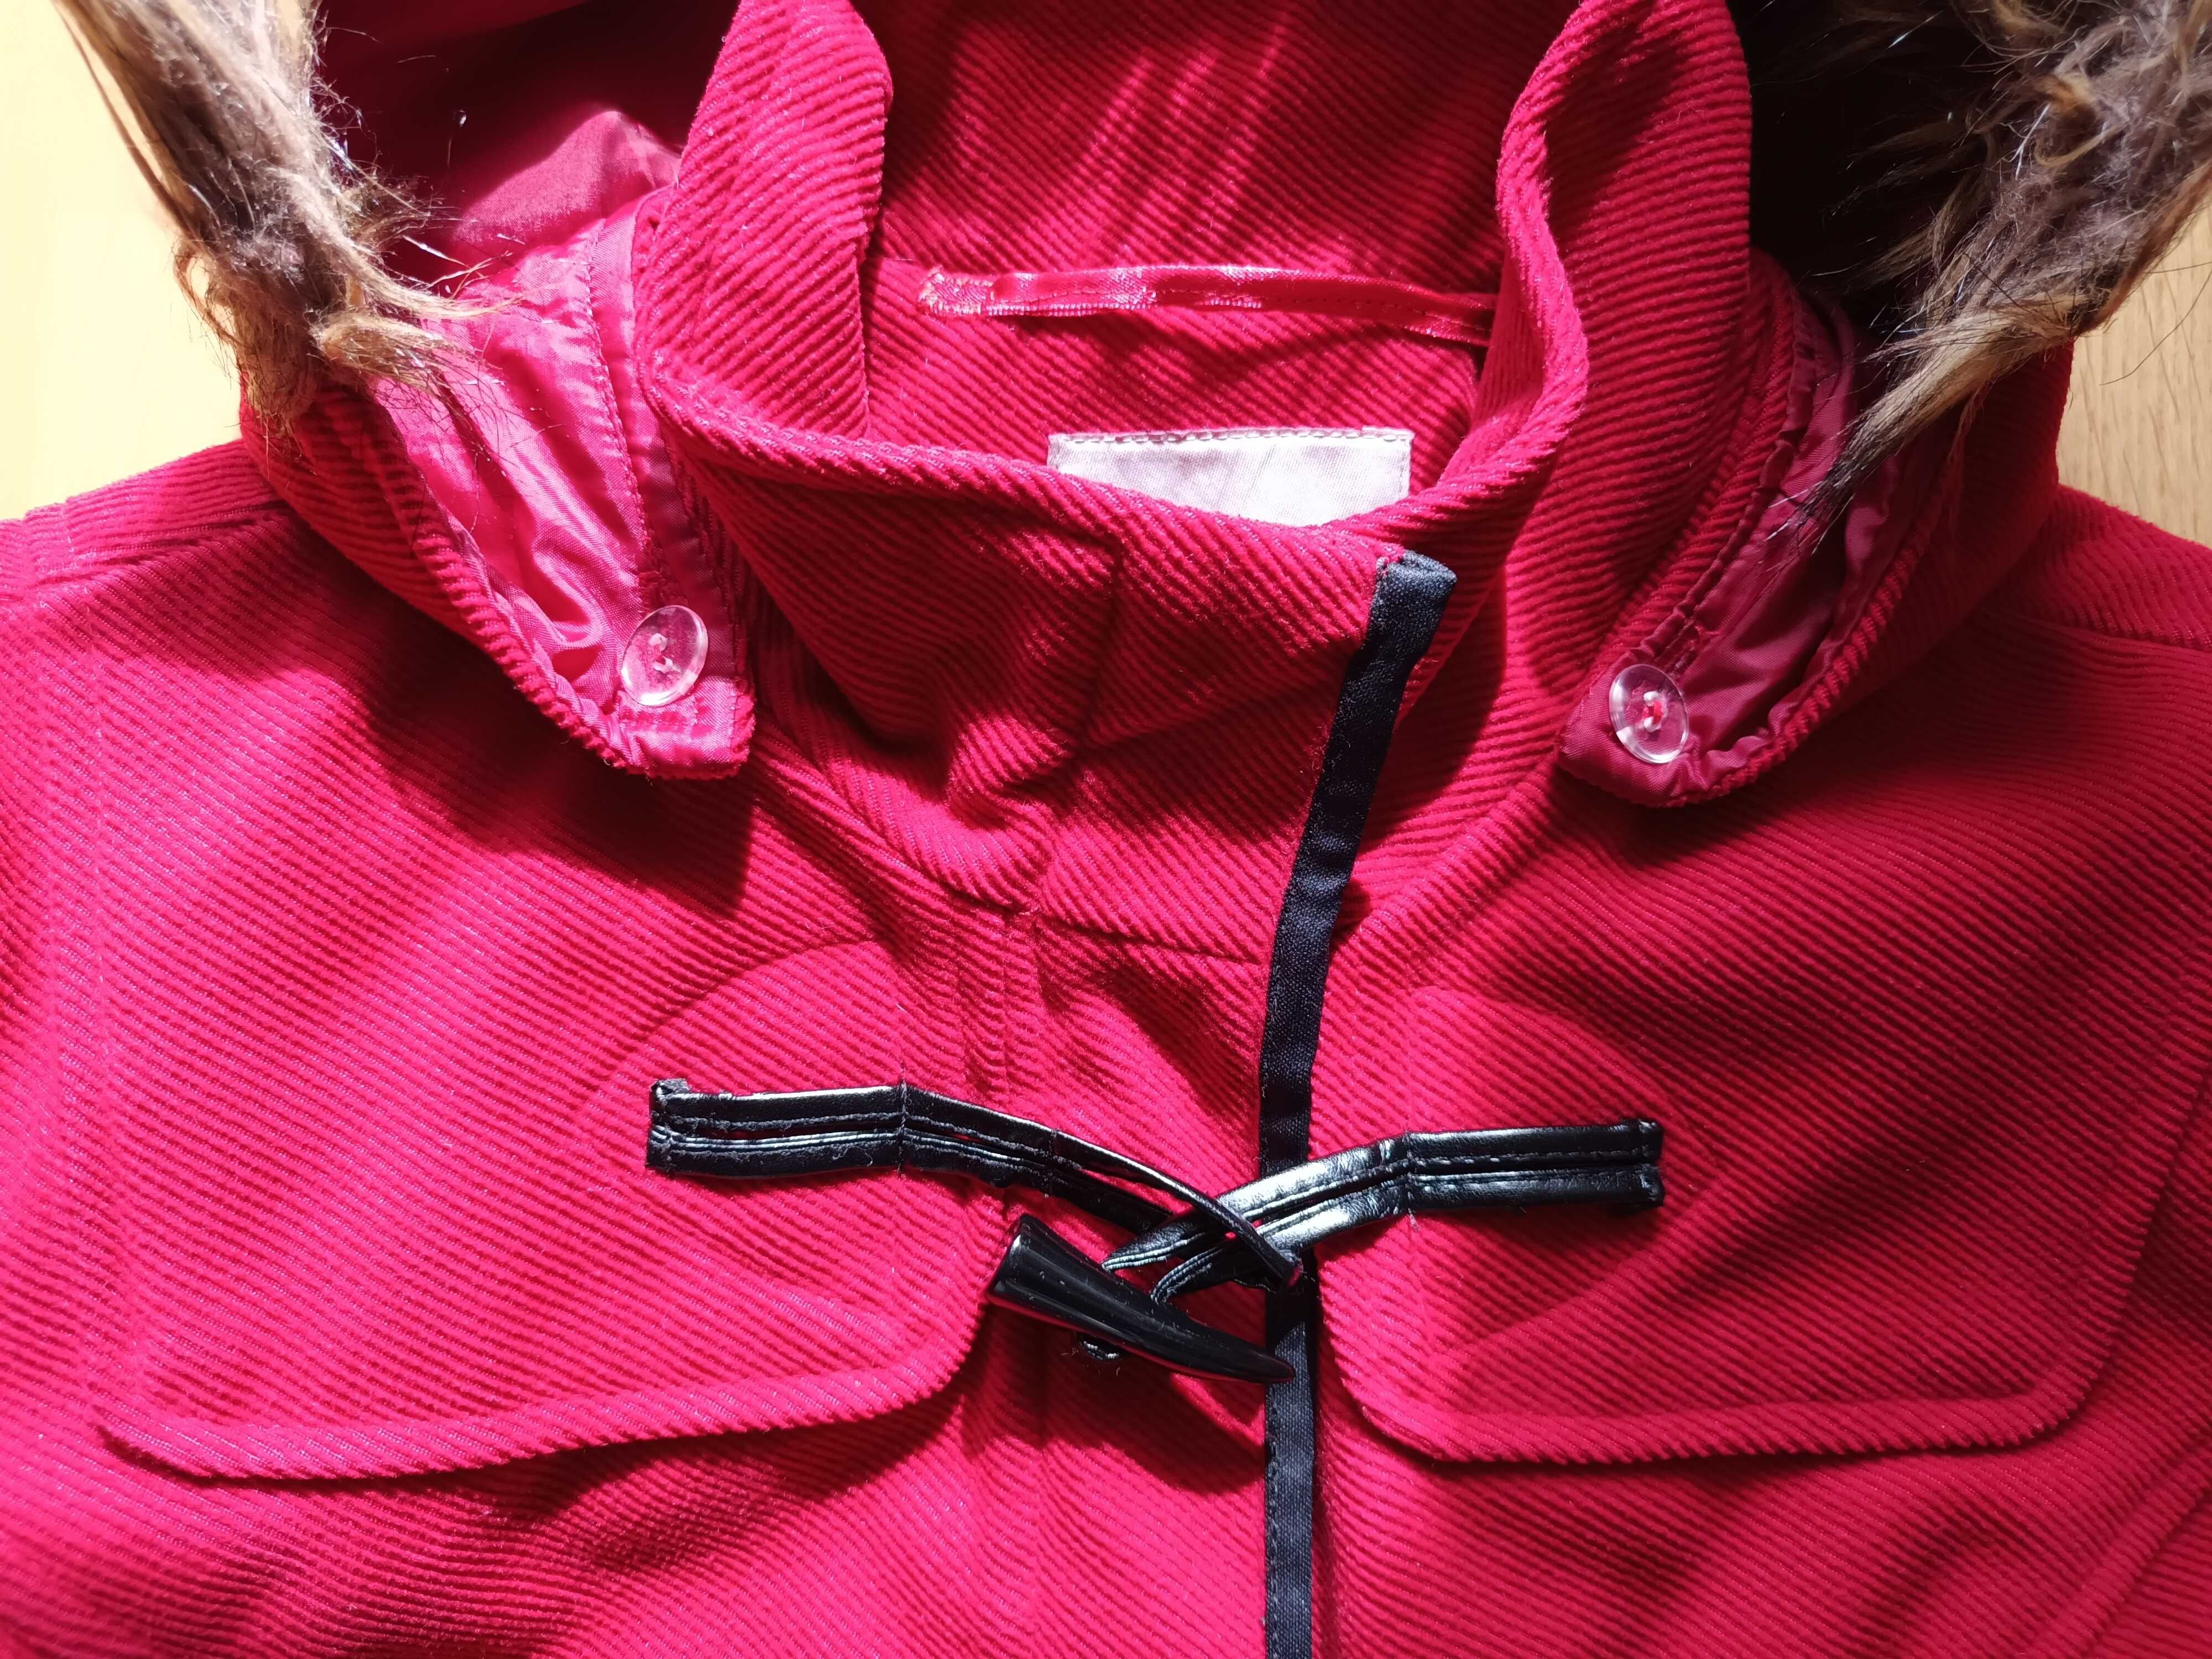 Kurtka, krótki płaszcz - czerwona Orsay r. 38 z kapturem z futerkiem